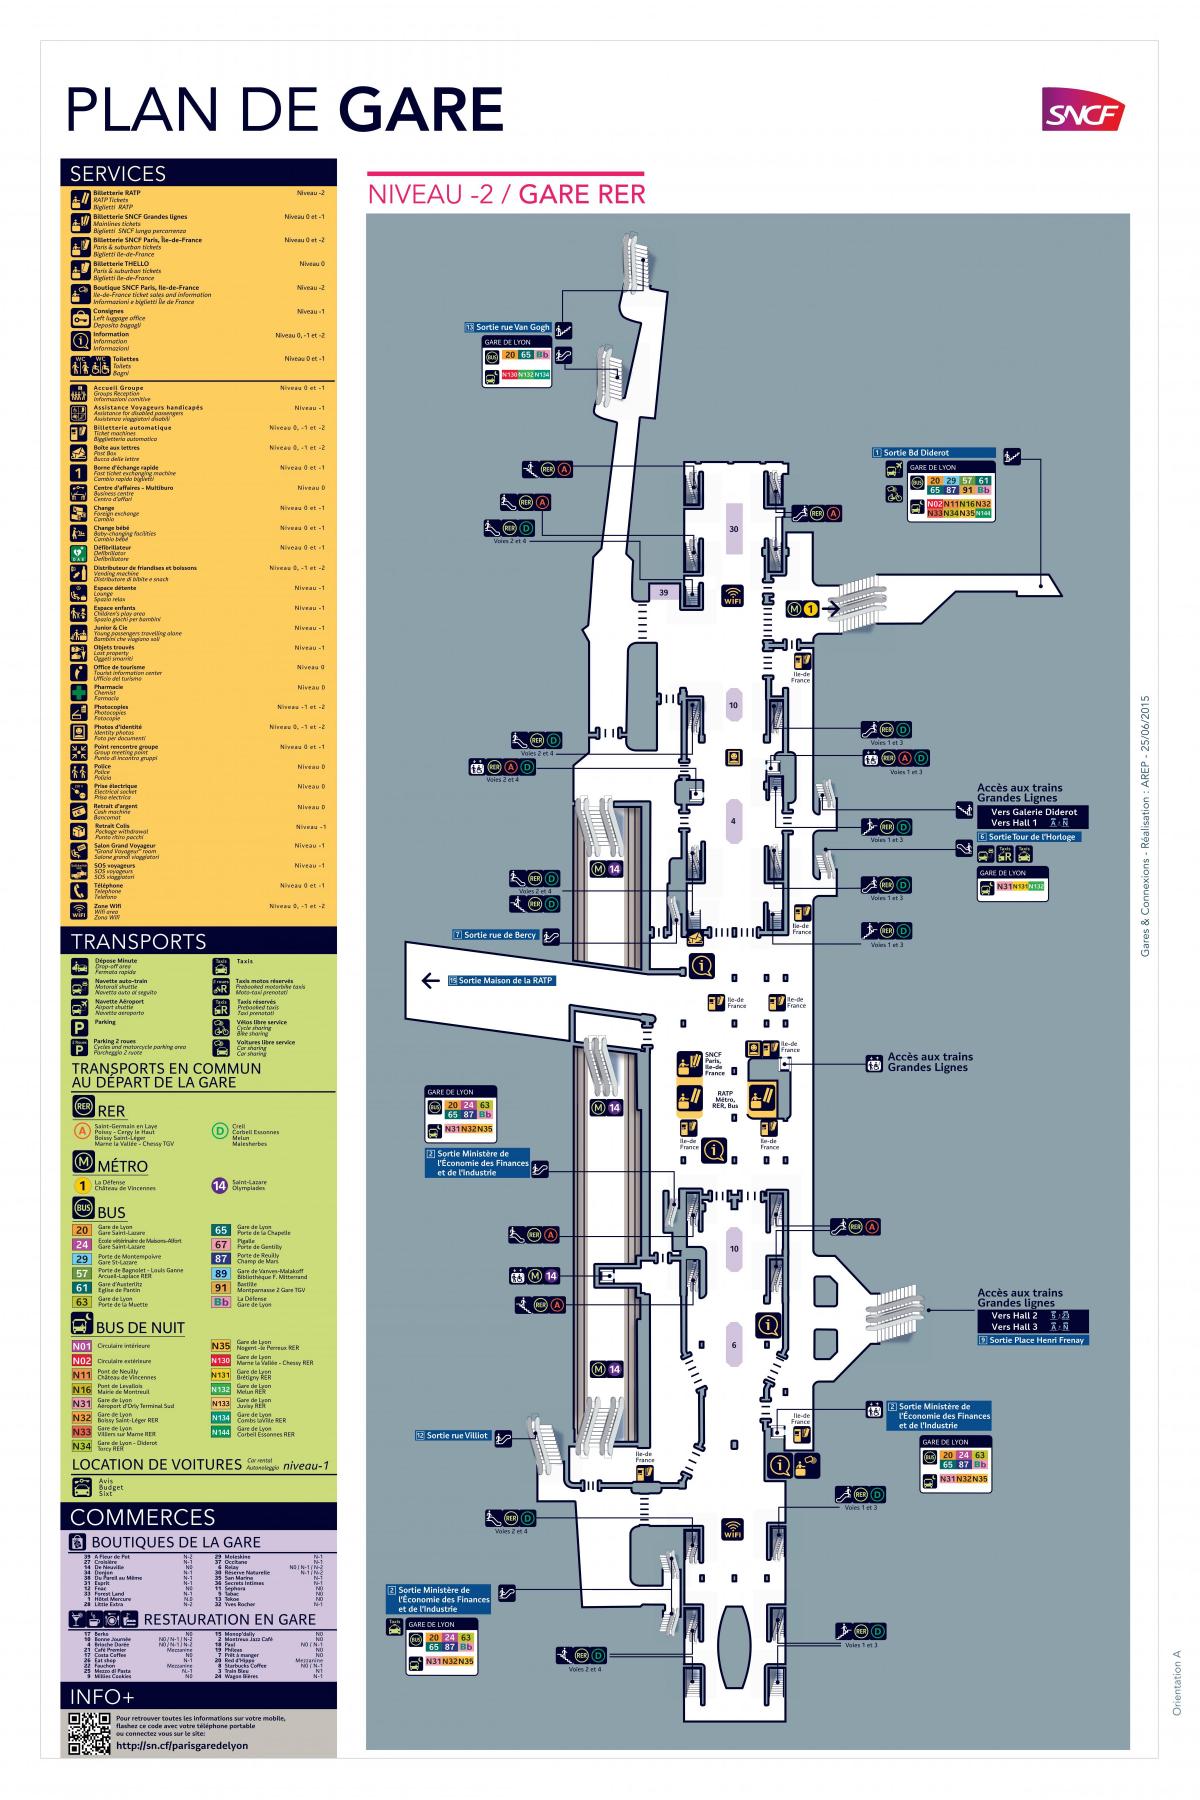 Mapa ng Paris Gare de Lyon RER